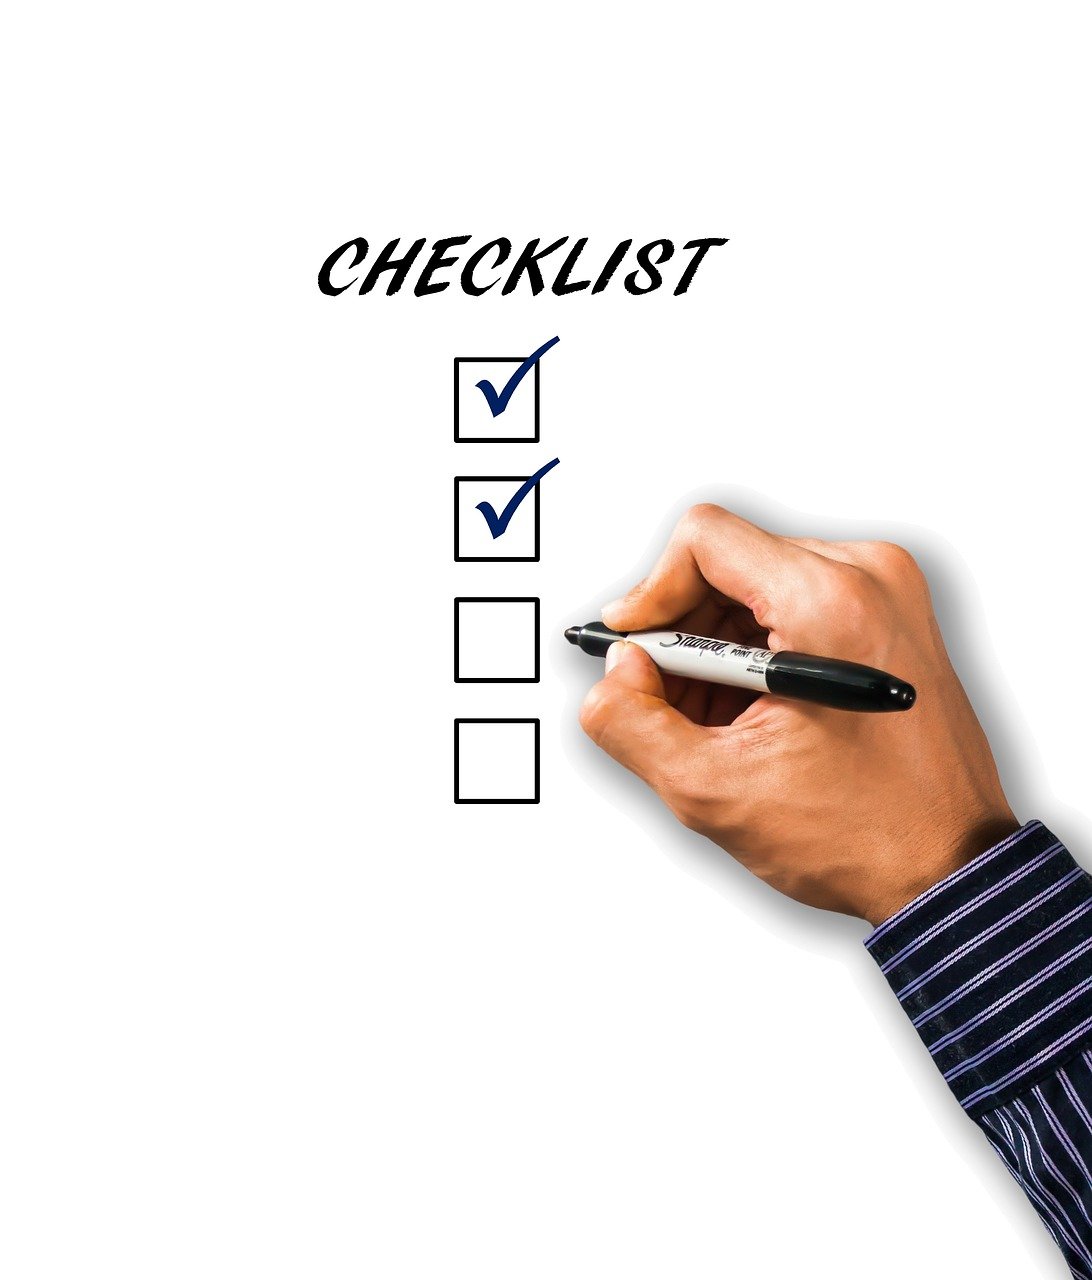 checklist, list, hand